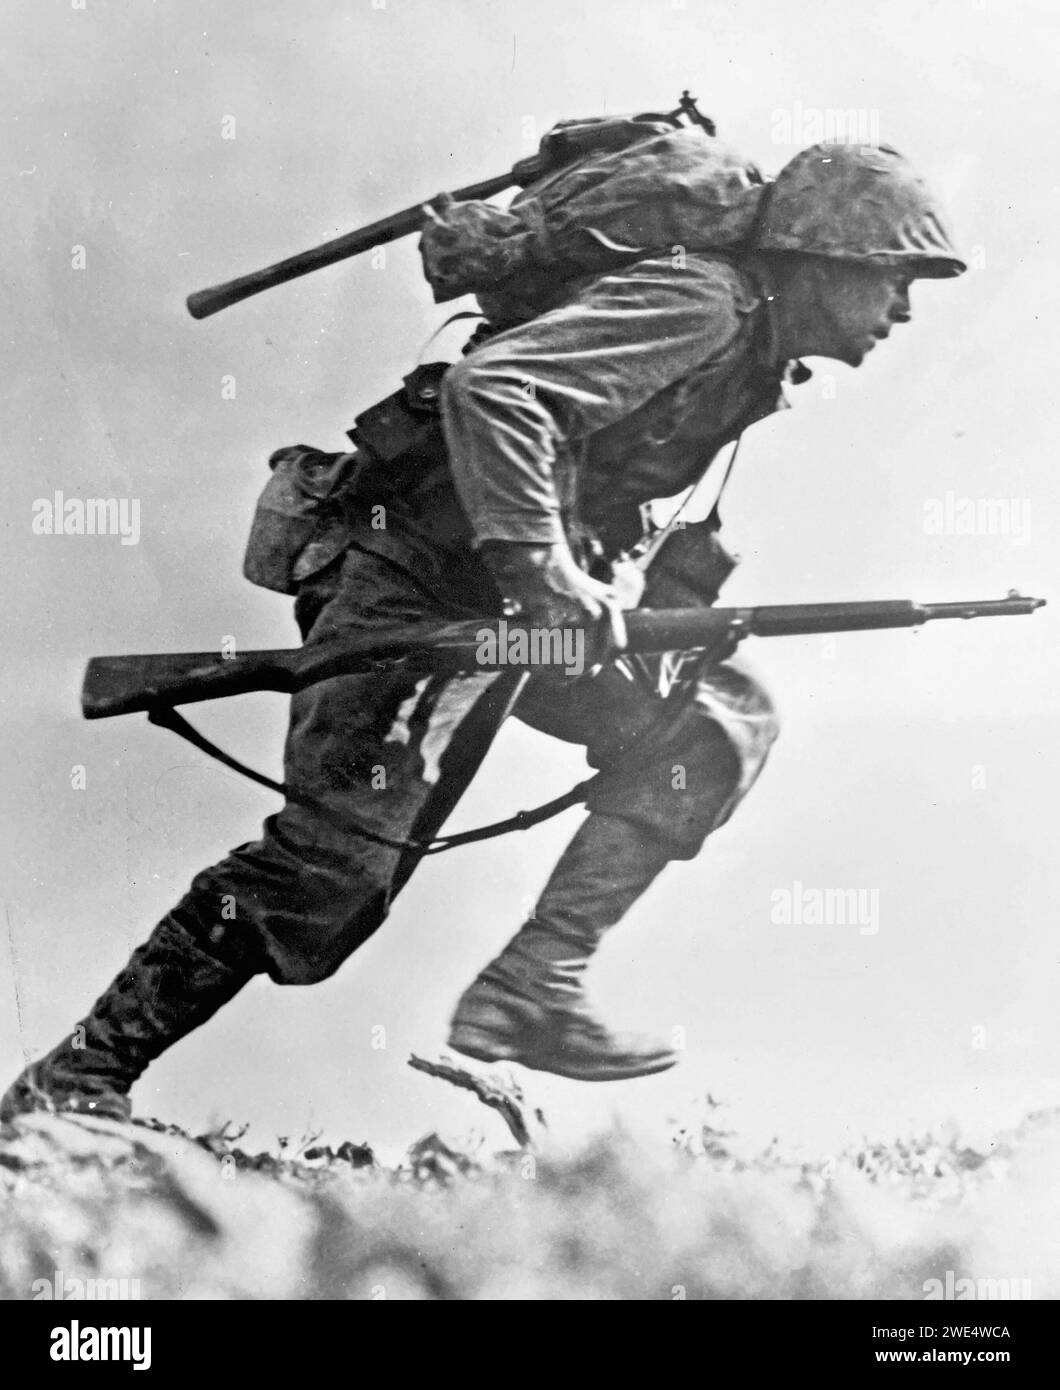 PAUL Ison (1916-12001) soldat de première classe du corps des Marines des États-Unis qui a effectué des actions héroïques lors de la bataille d'Okinawa en mai 1945 cette photo a été prise par le soldat Bob Bailey le 10 mai. Banque D'Images